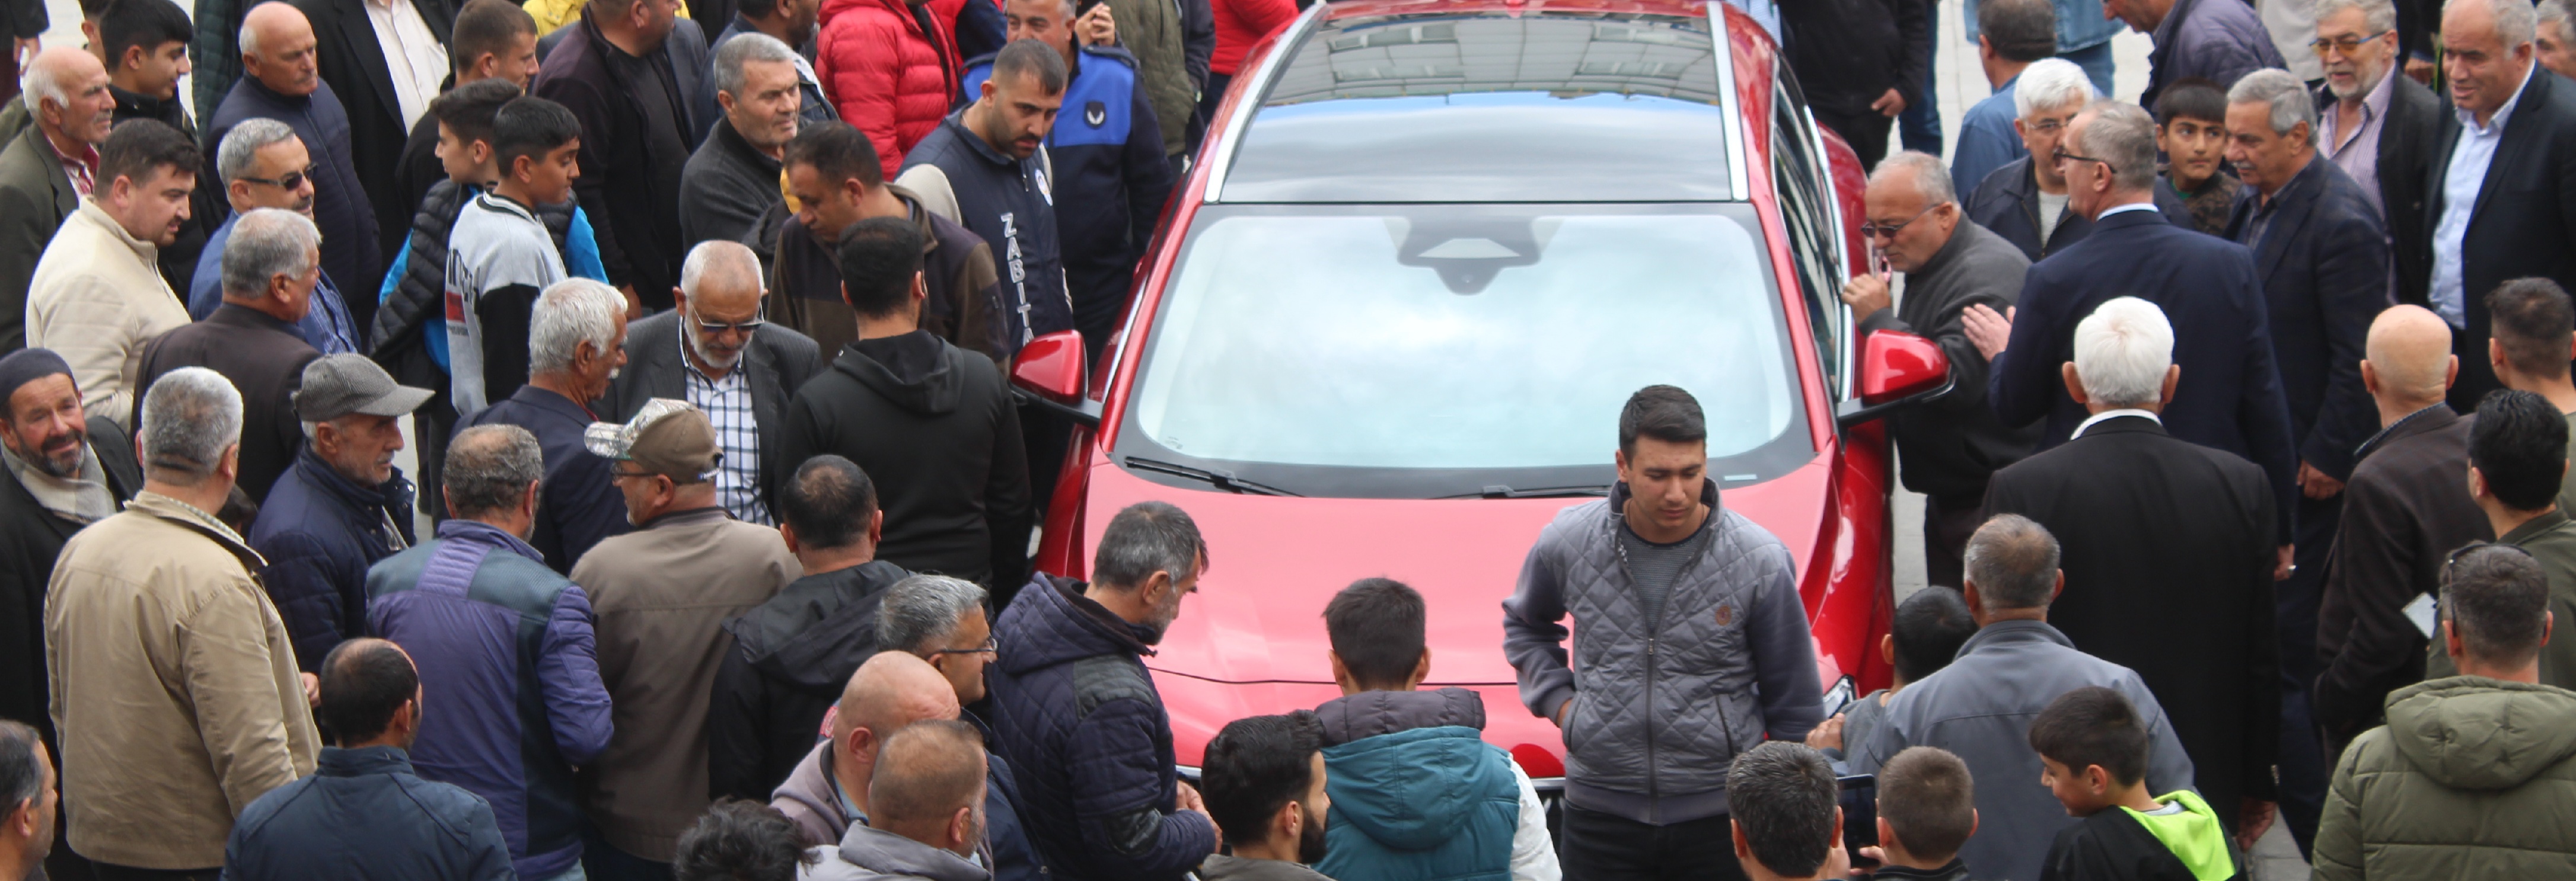 Türkiye'nin yerli otomobili Togg, Yunak'ta tanıtıldı